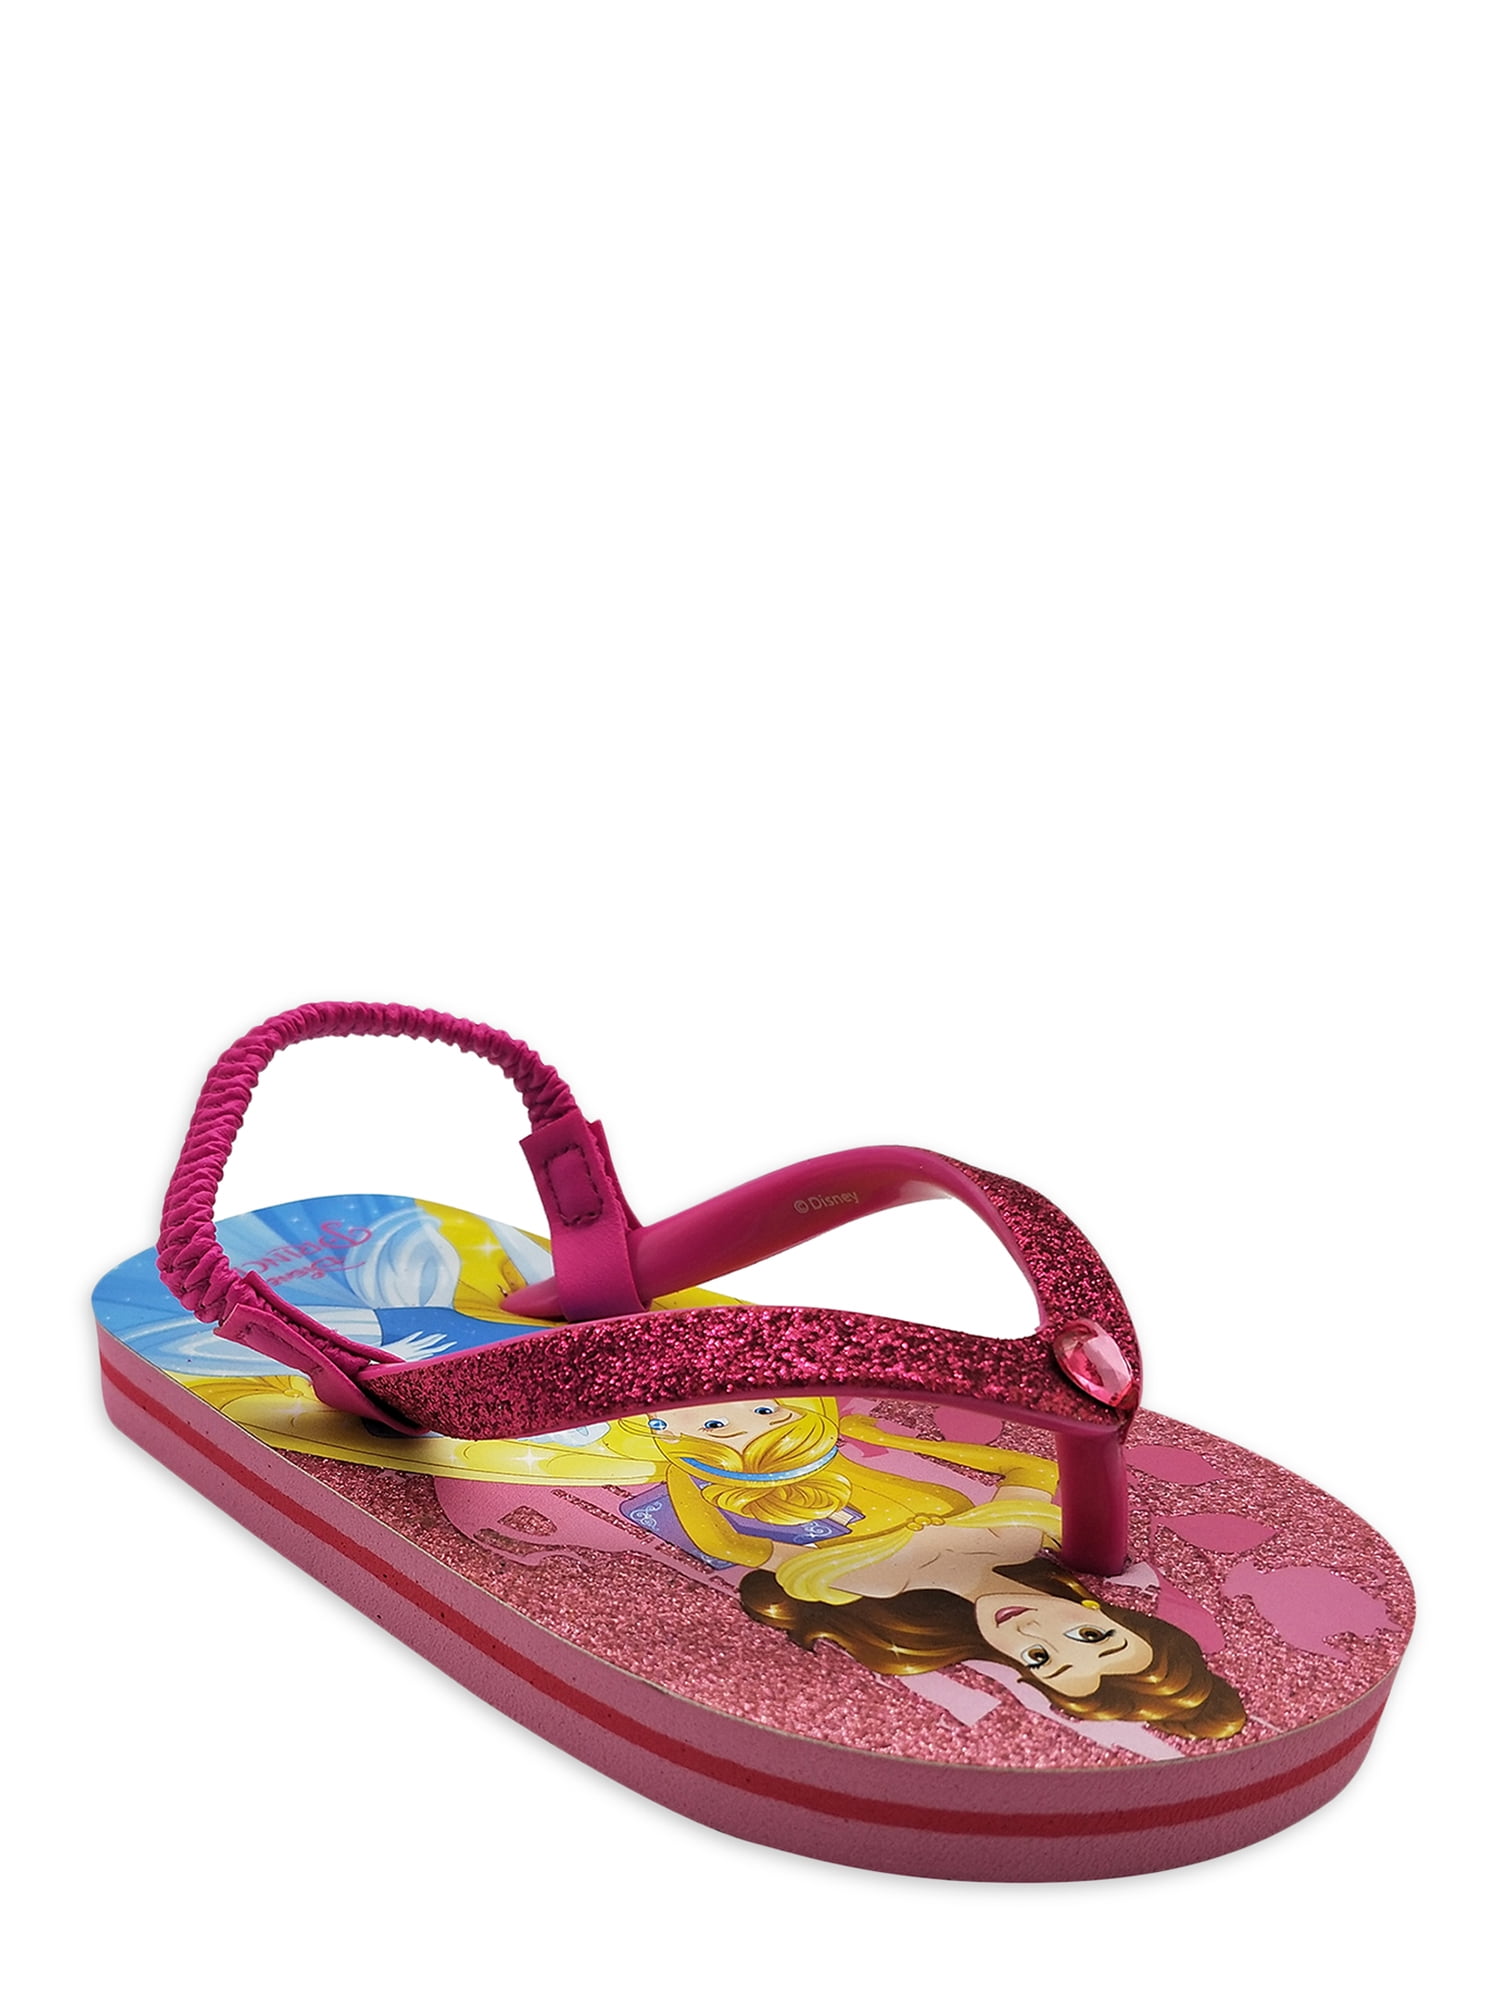 Disney Princesses Flip Flop Sandal (Toddler Girls) - Walmart.com